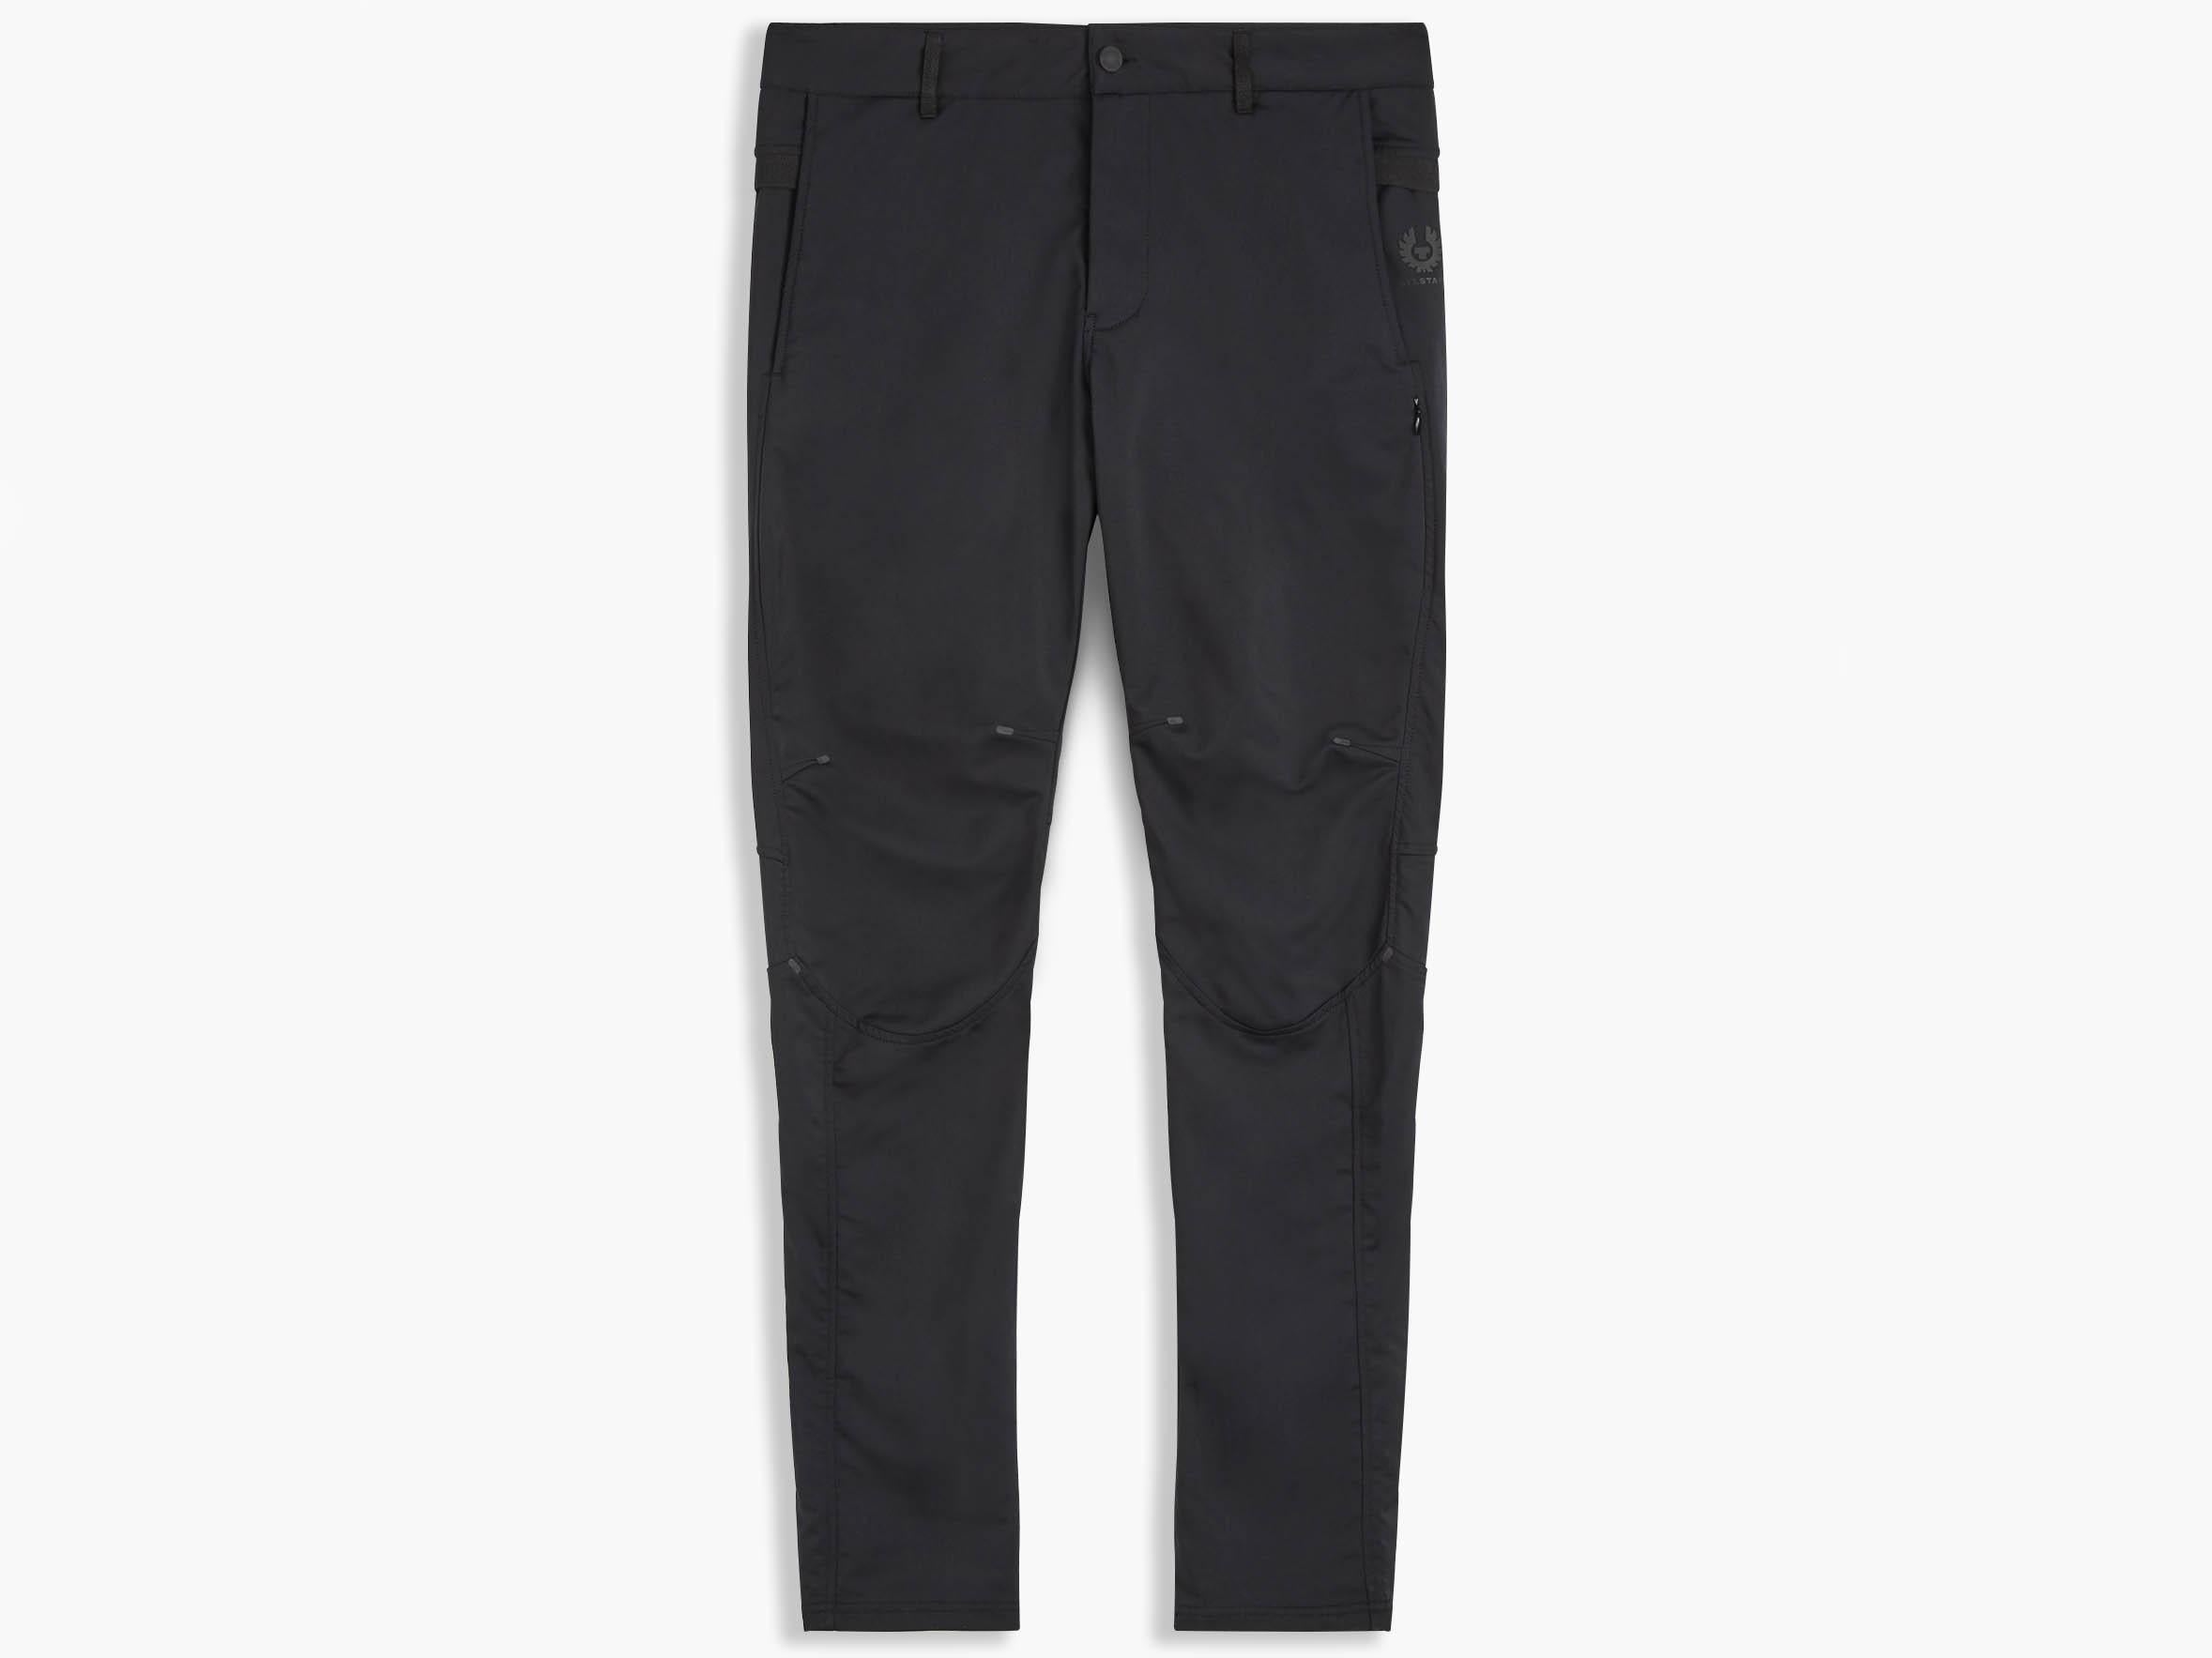 Men’s Belstaff Pursuit Trousers, £295